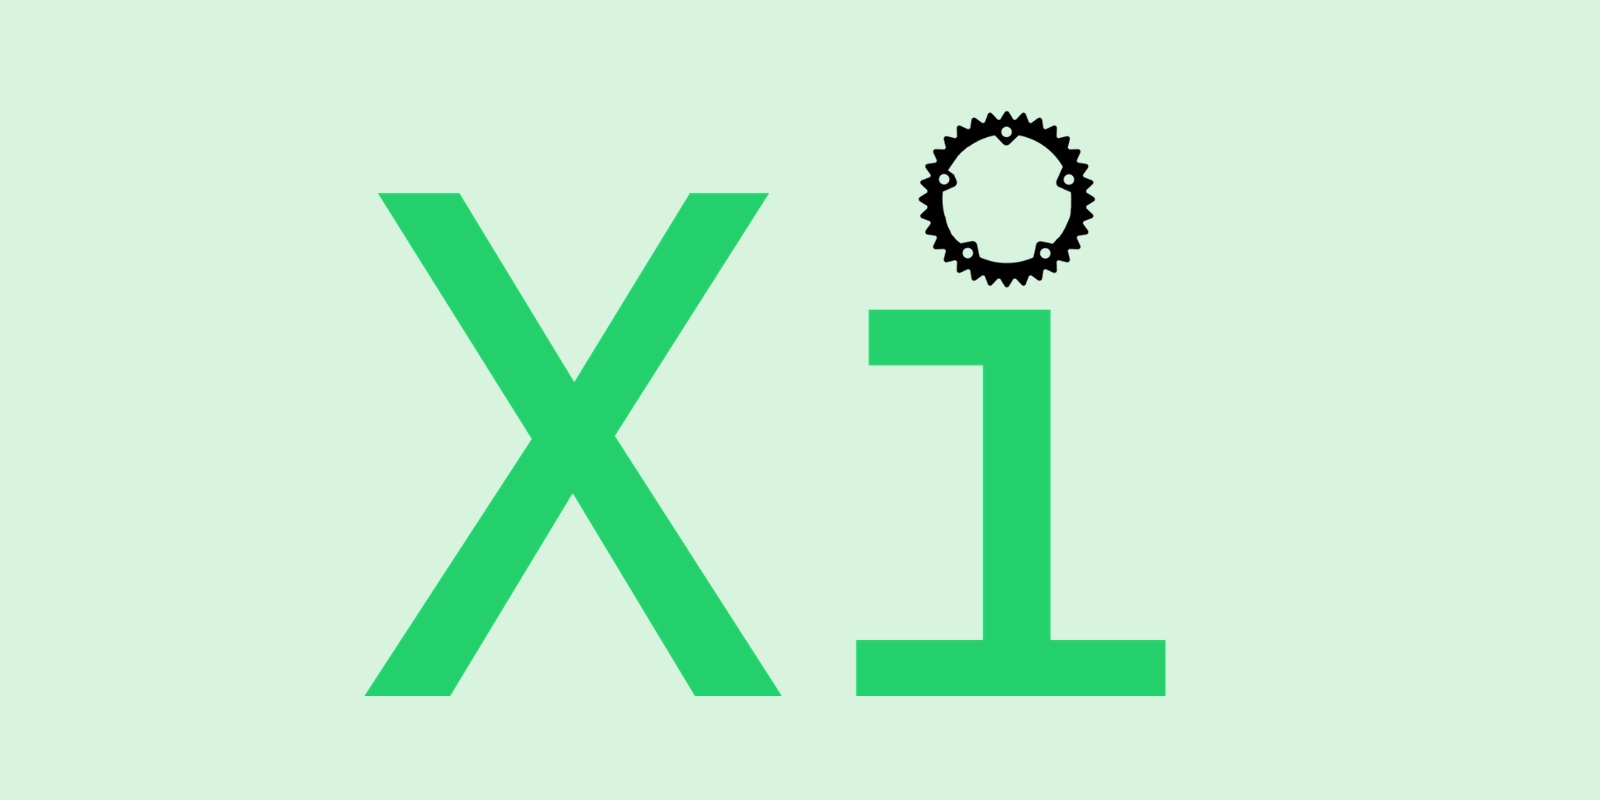 Xi code editor logo